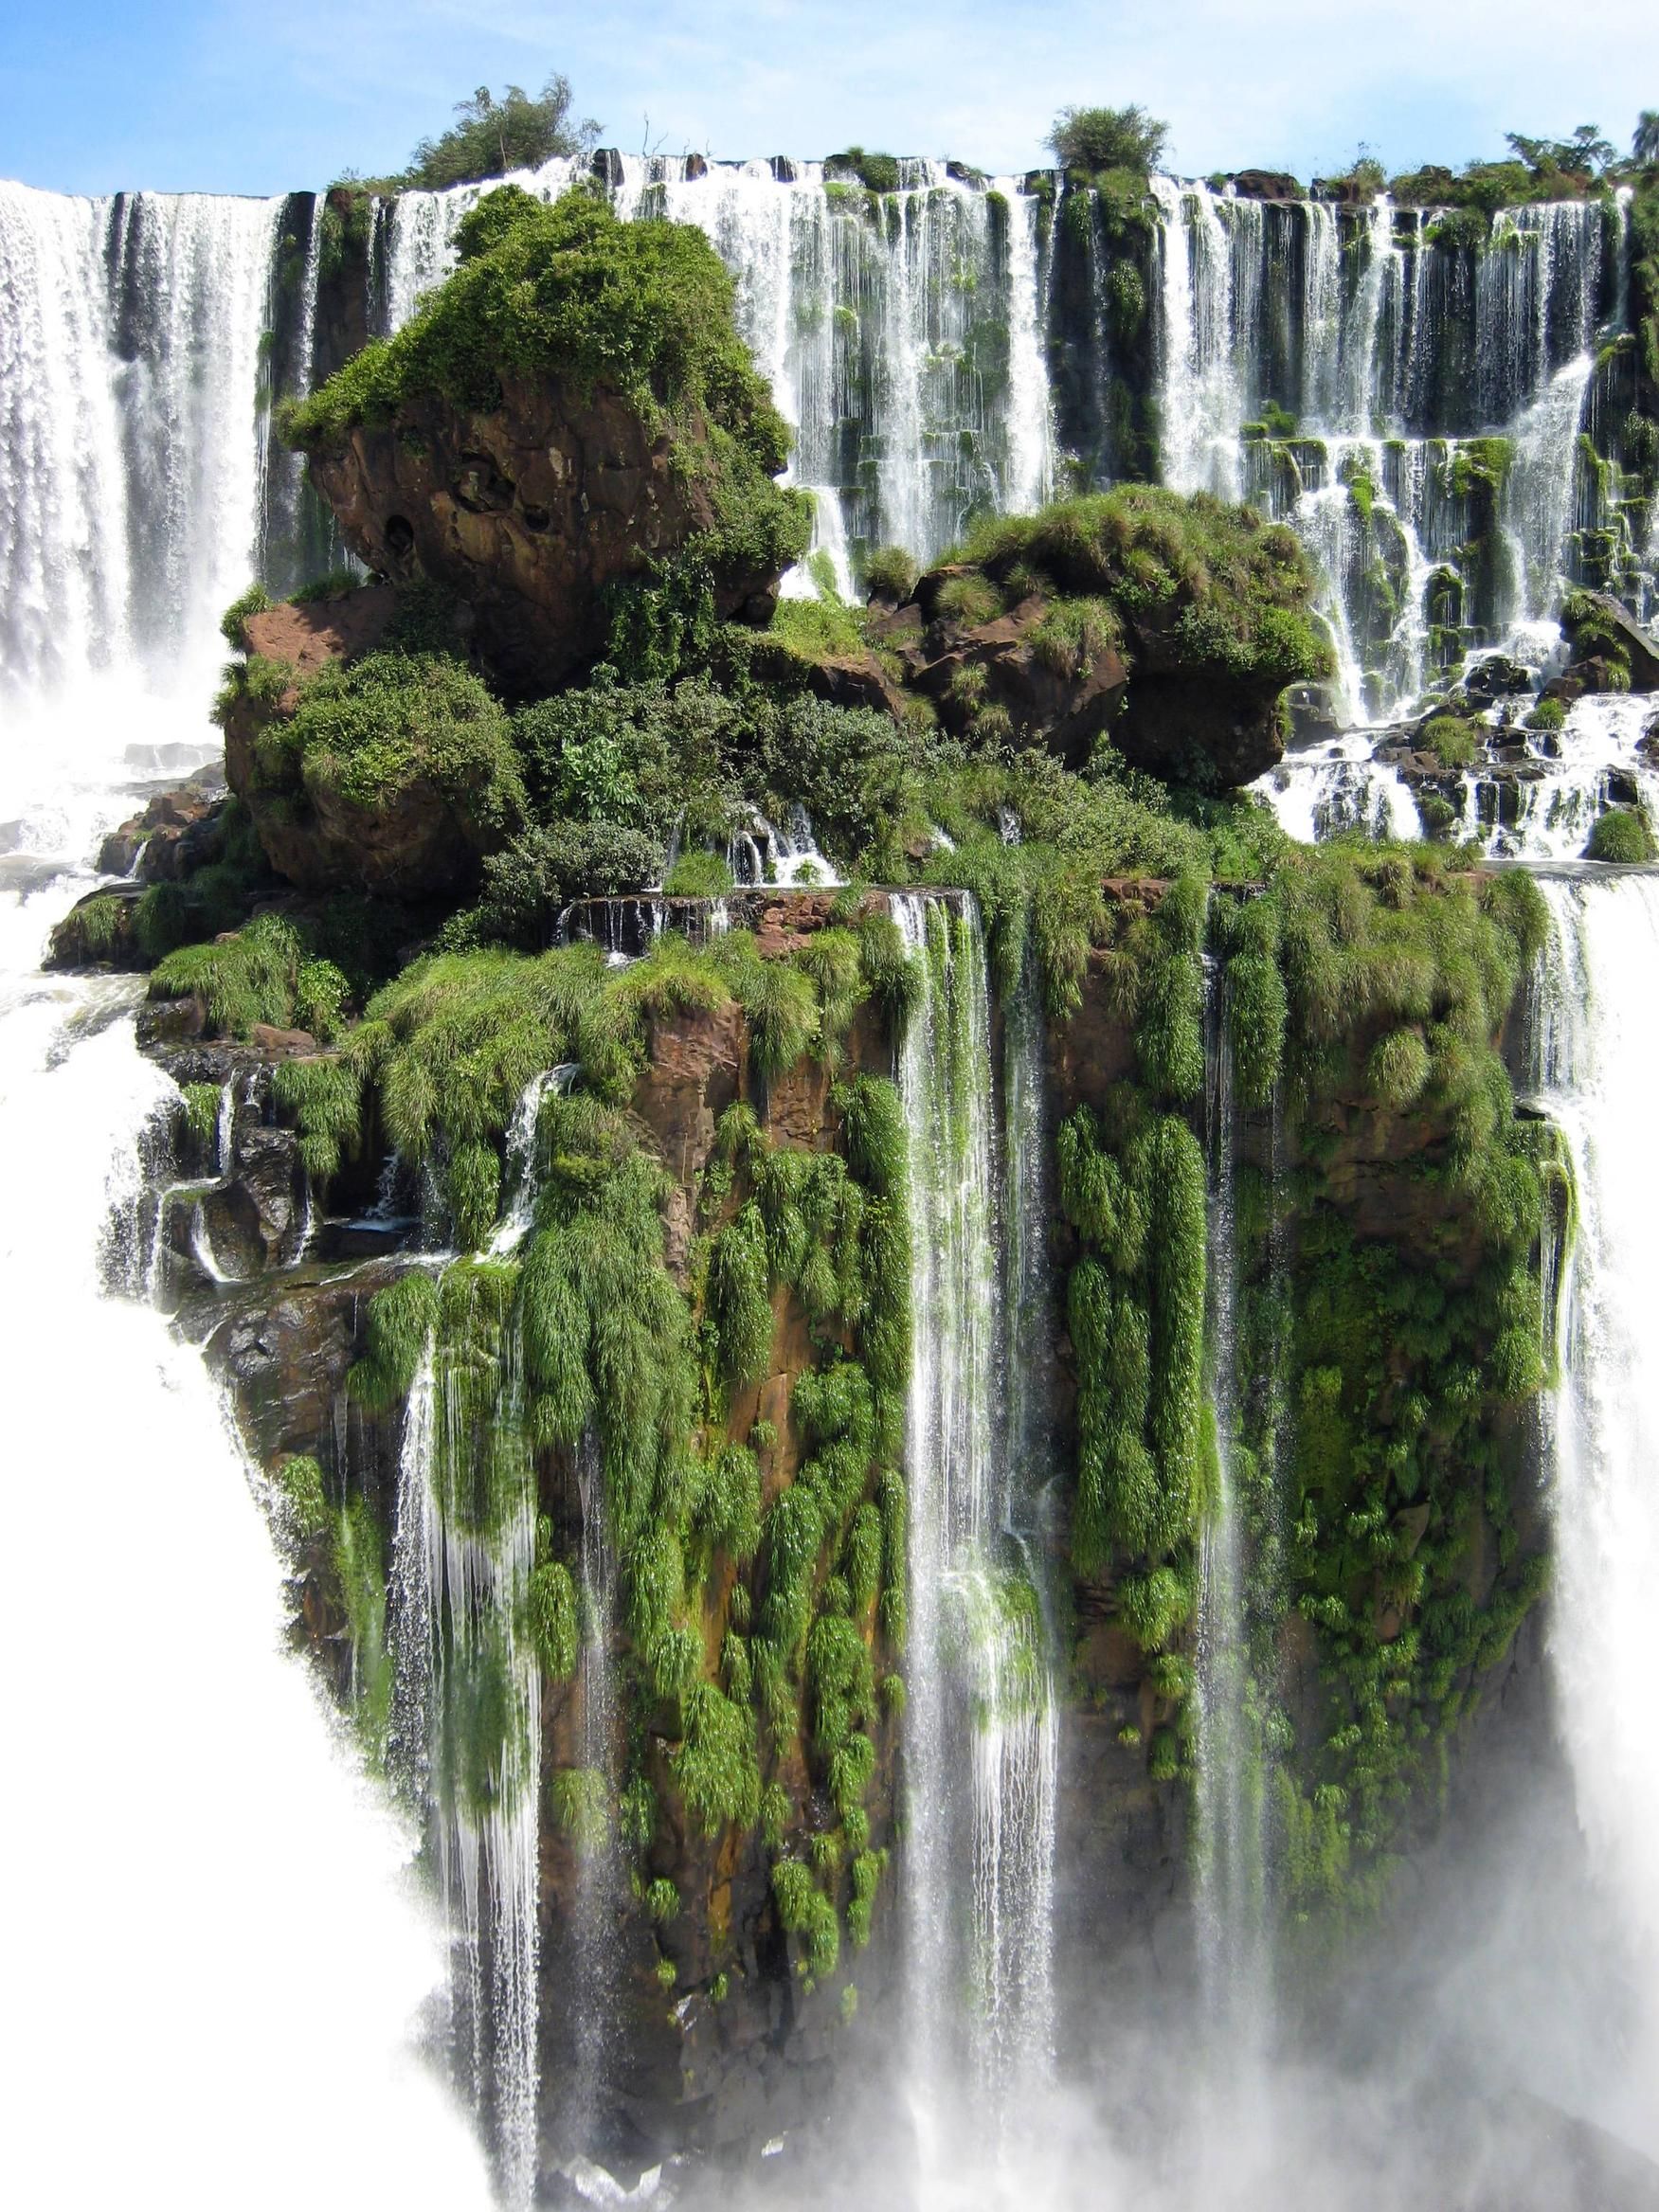 Waterfall Island, Alto Parana, Paraguay